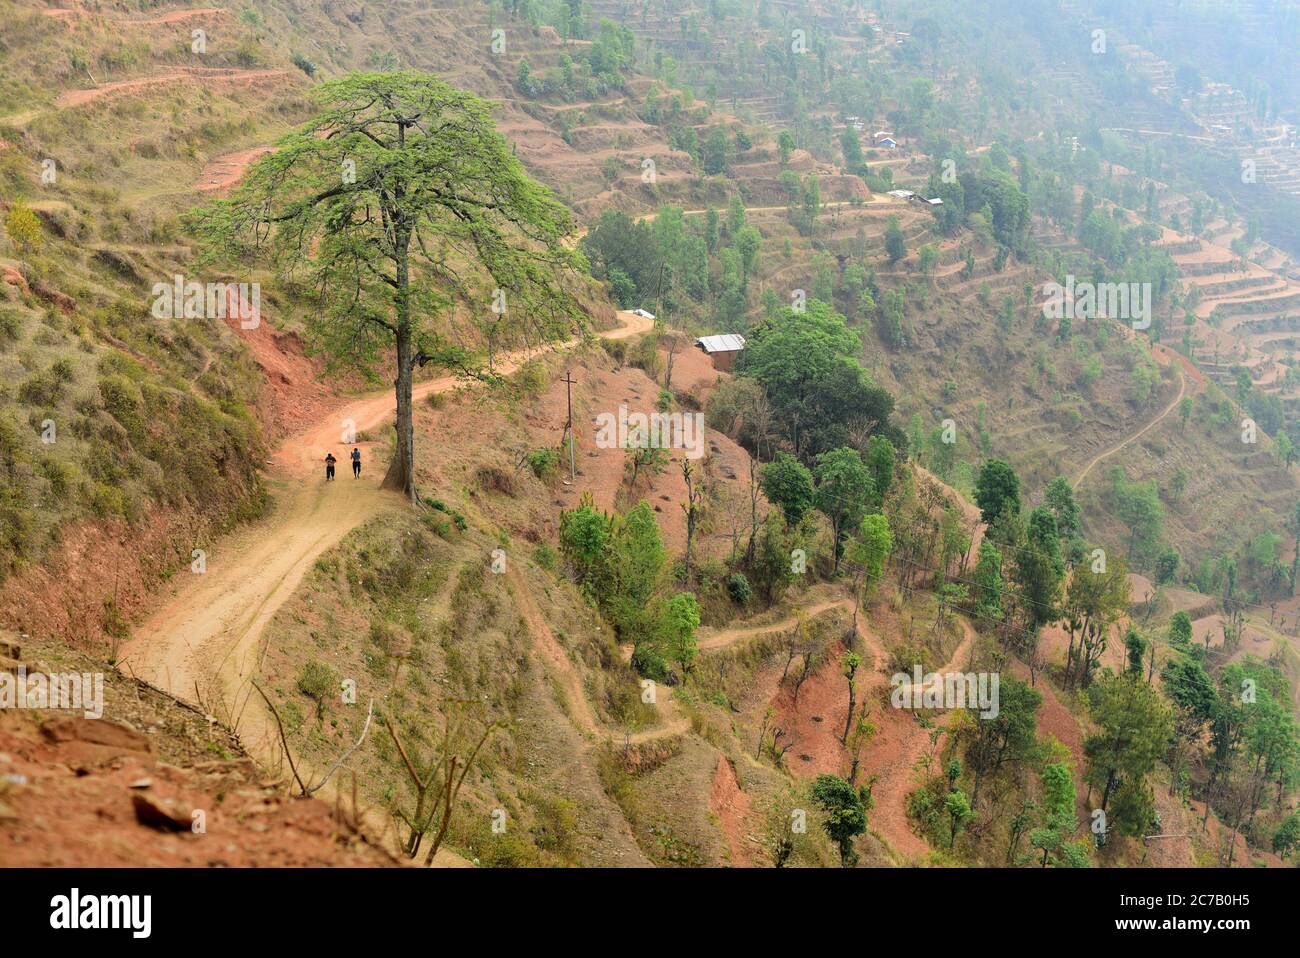 Ein ländlicher Pfad an einem steilen Hang im Dorf Chandani Mandan, wo 2015 Erdbeben-induzierte Erdrutsche stattfanden. Chandani Mandan, Bezirk Kavrepalanchok, Bagmati Pradesh, Nepal. Das Straßennetz in Nepal wurde durch das Erdbeben von 2015 mäßig beschädigt. Die geschätzten Schäden am strategischen Straßennetz (SRN) beliefen sich auf insgesamt 45,9 Mio. USD, während die Gesamtverluste auf 5,26 Mio. USD geschätzt wurden. Im lokalen Straßennetz (LRN) beliefen sich die geschätzten Gesamtschäden auf 124,85 Mio. USD, während die Gesamtverluste 42,74 Mio. USD betrugen. Landstraßen und Wege wurden ebenfalls beschädigt oder abgeschnitten. Stockfoto